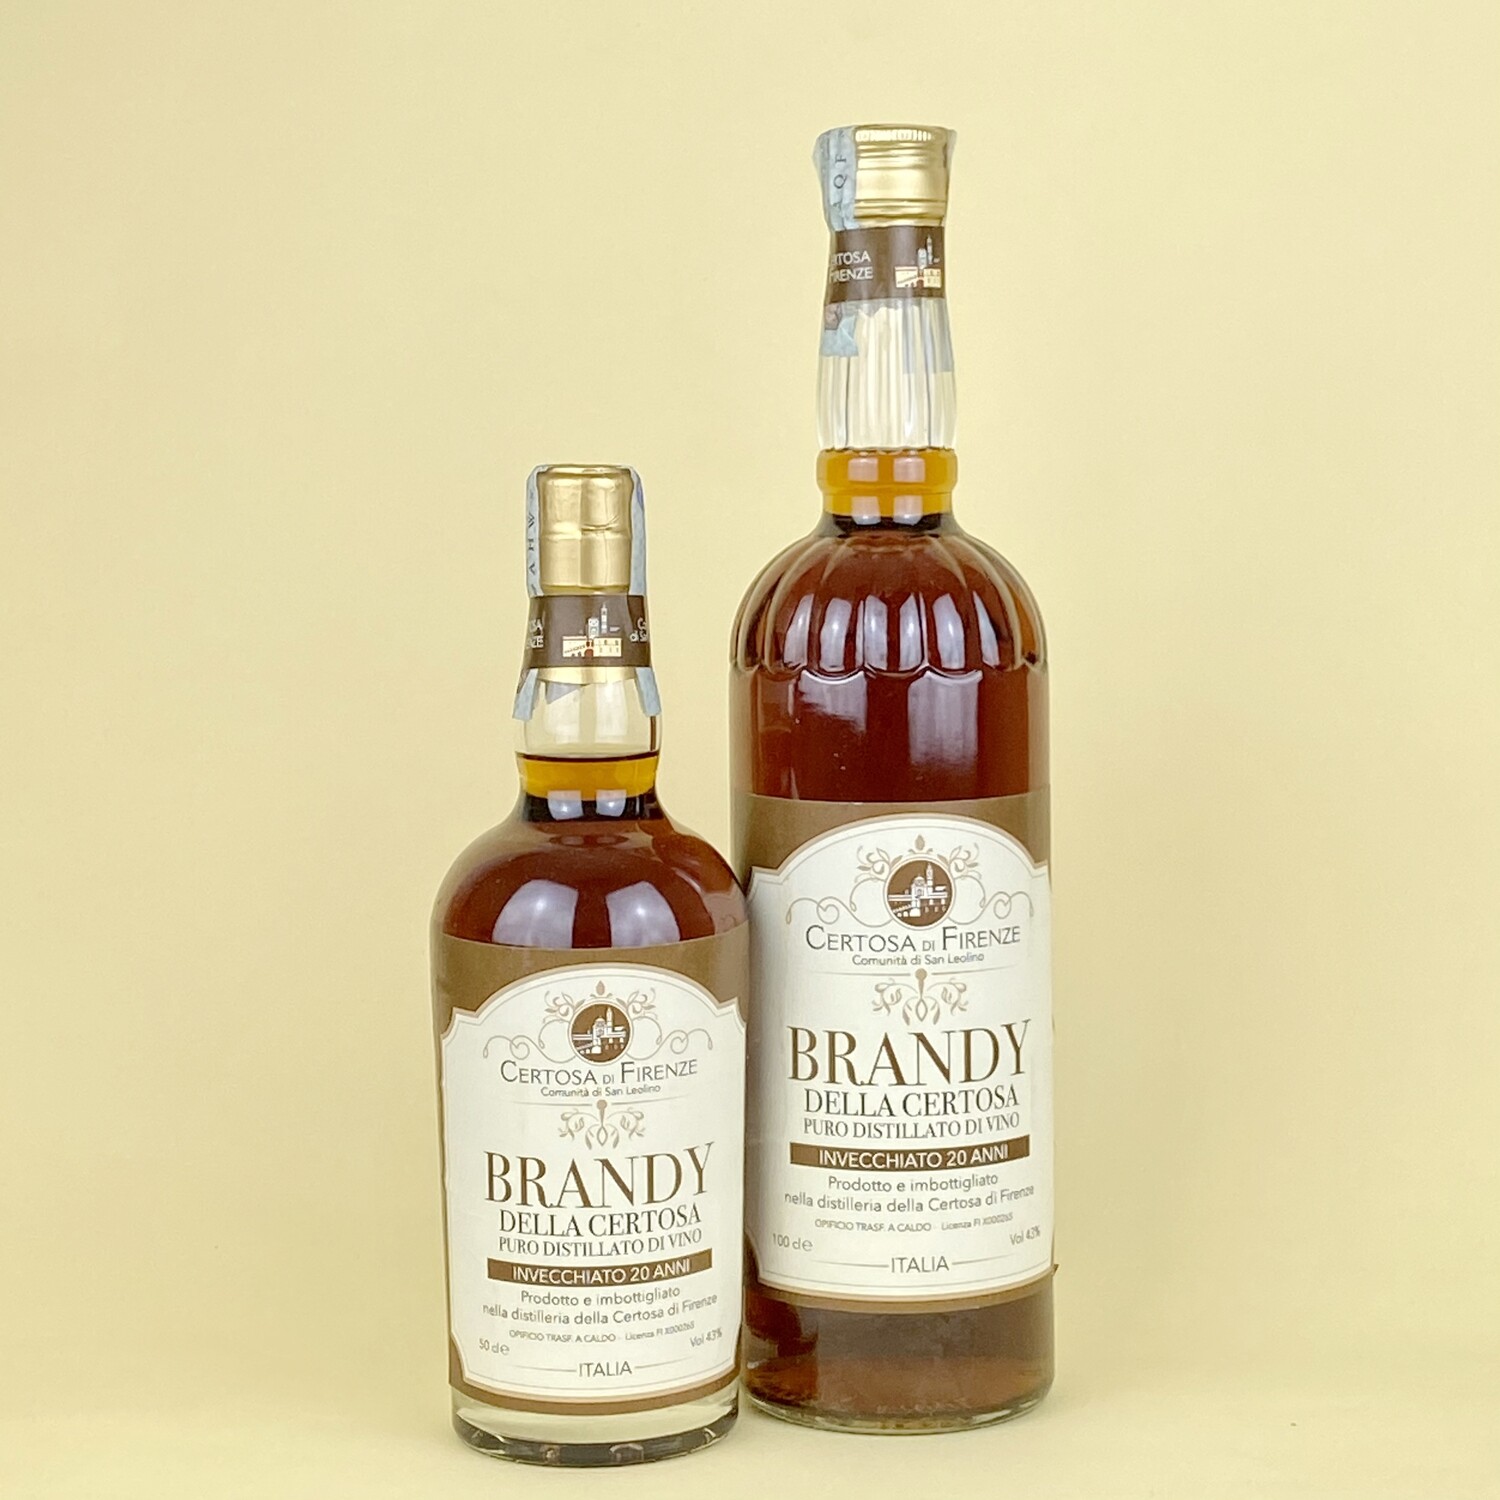 Brandy - Puro distillato di vino